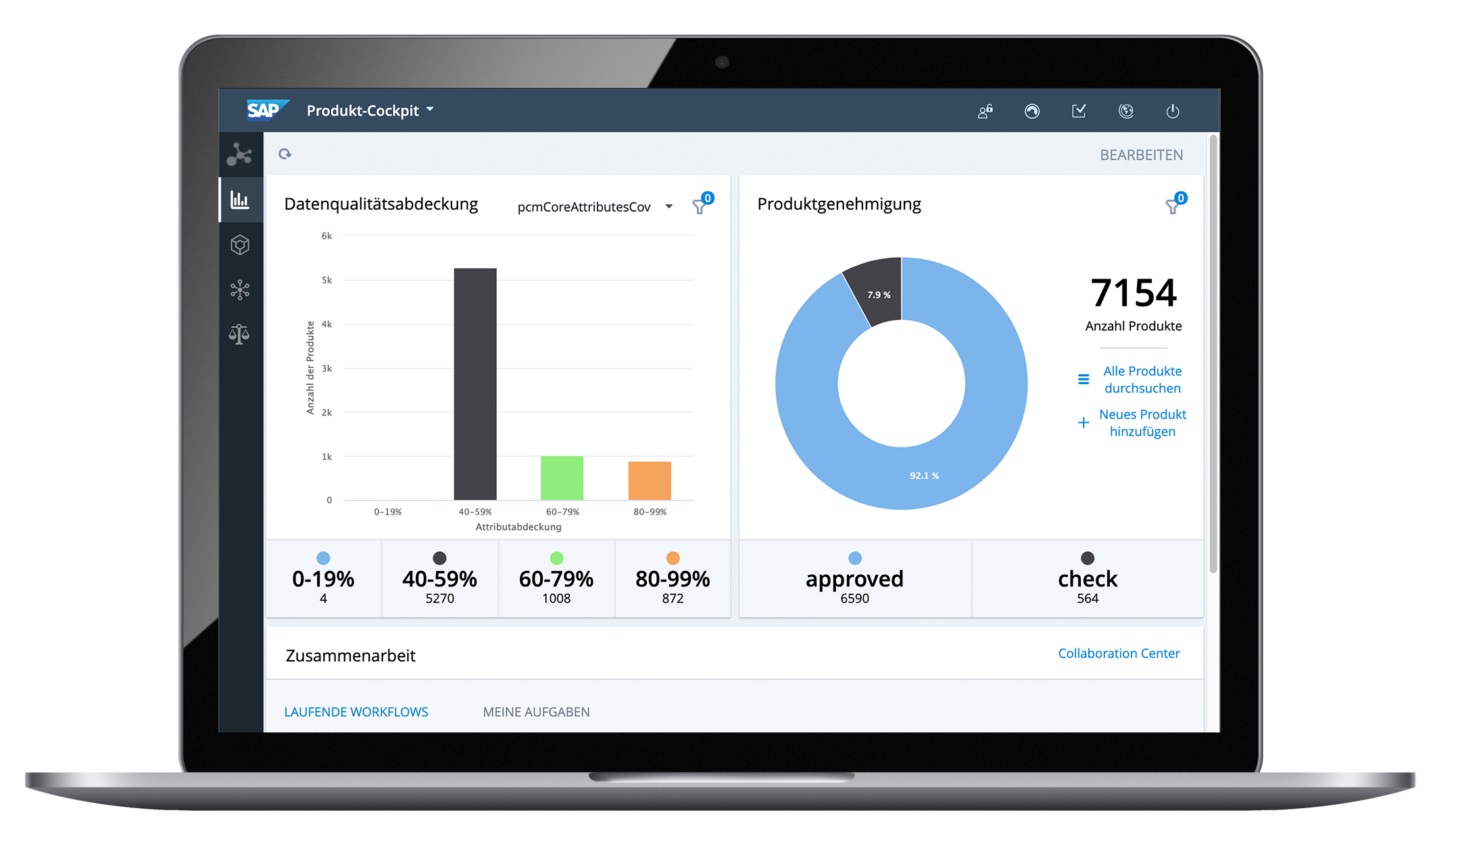 SAP product cockpit of the SAP commerce cloud